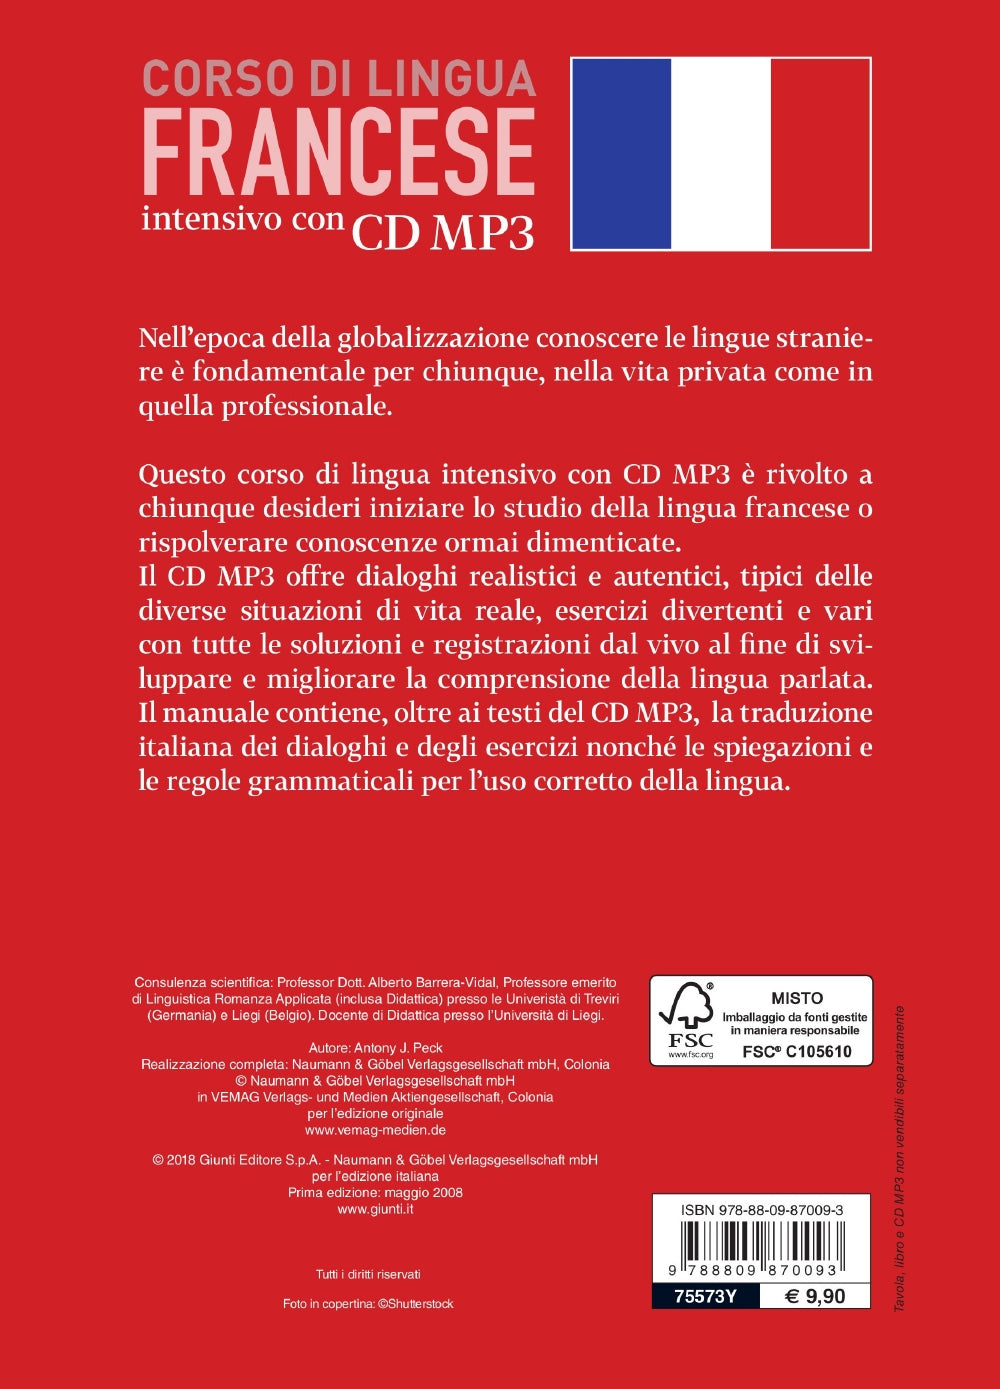 Francese. Corso di lingua intensivo con CD MP3::CD MP3 della durata di 230 minuti - Manuale di oltre 200 pagine - Tavola grammaticale